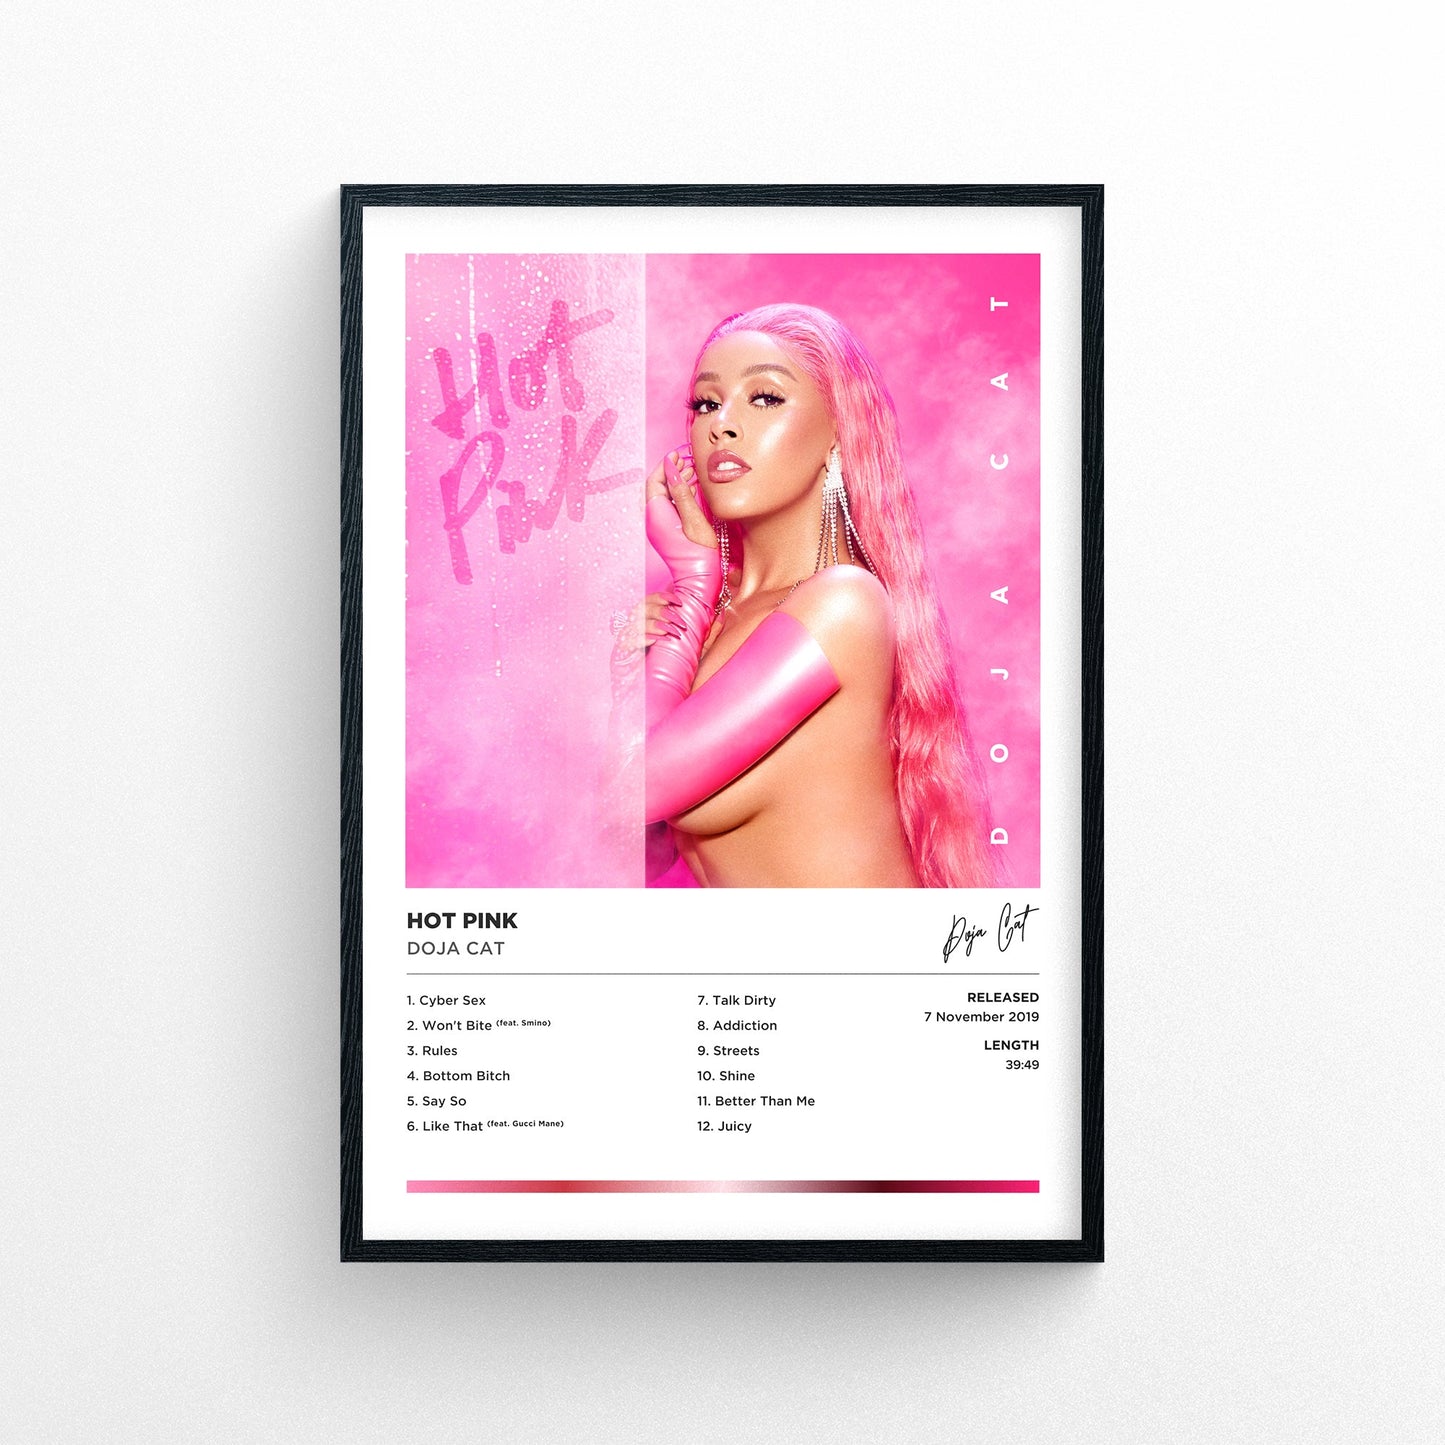 Doja Cat - Hot Pink Framed Poster Print | Polaroid Style | Album Cover Artwork